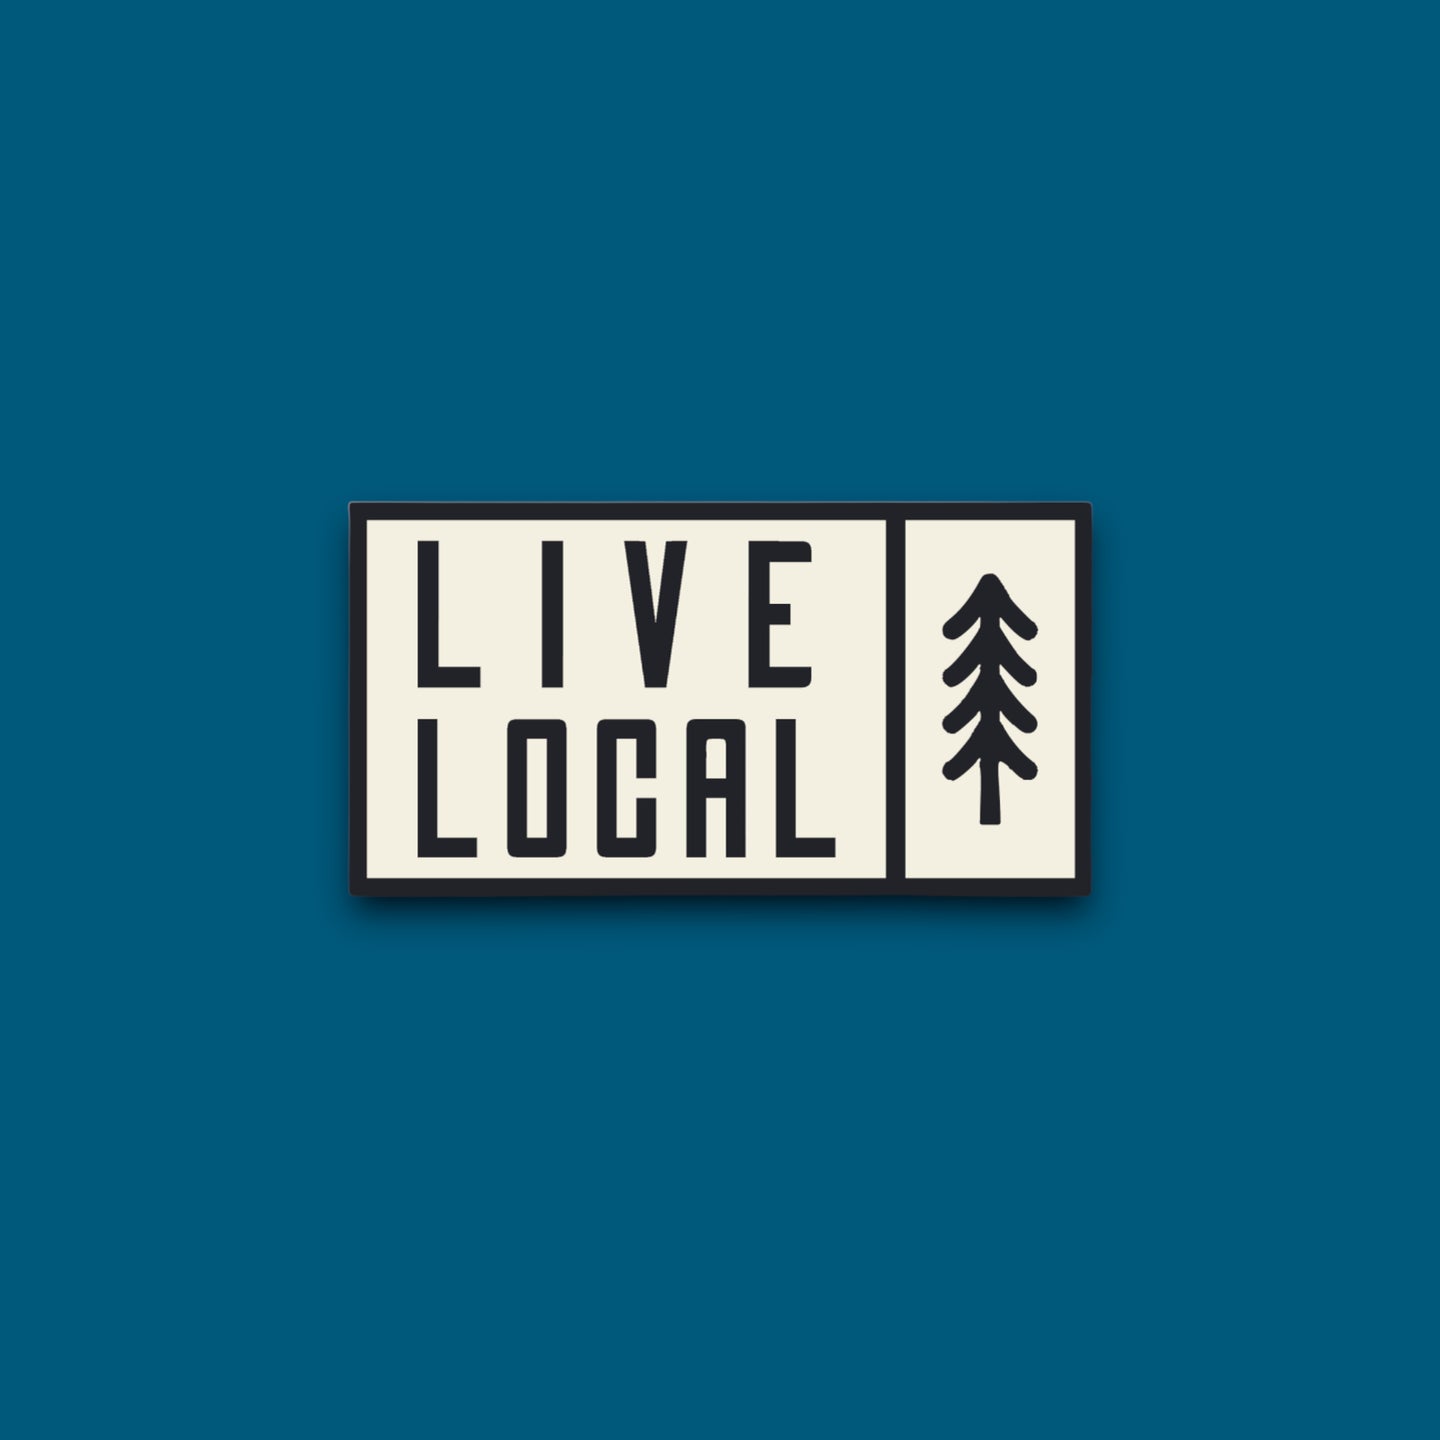 Live Local Sticker (P1)